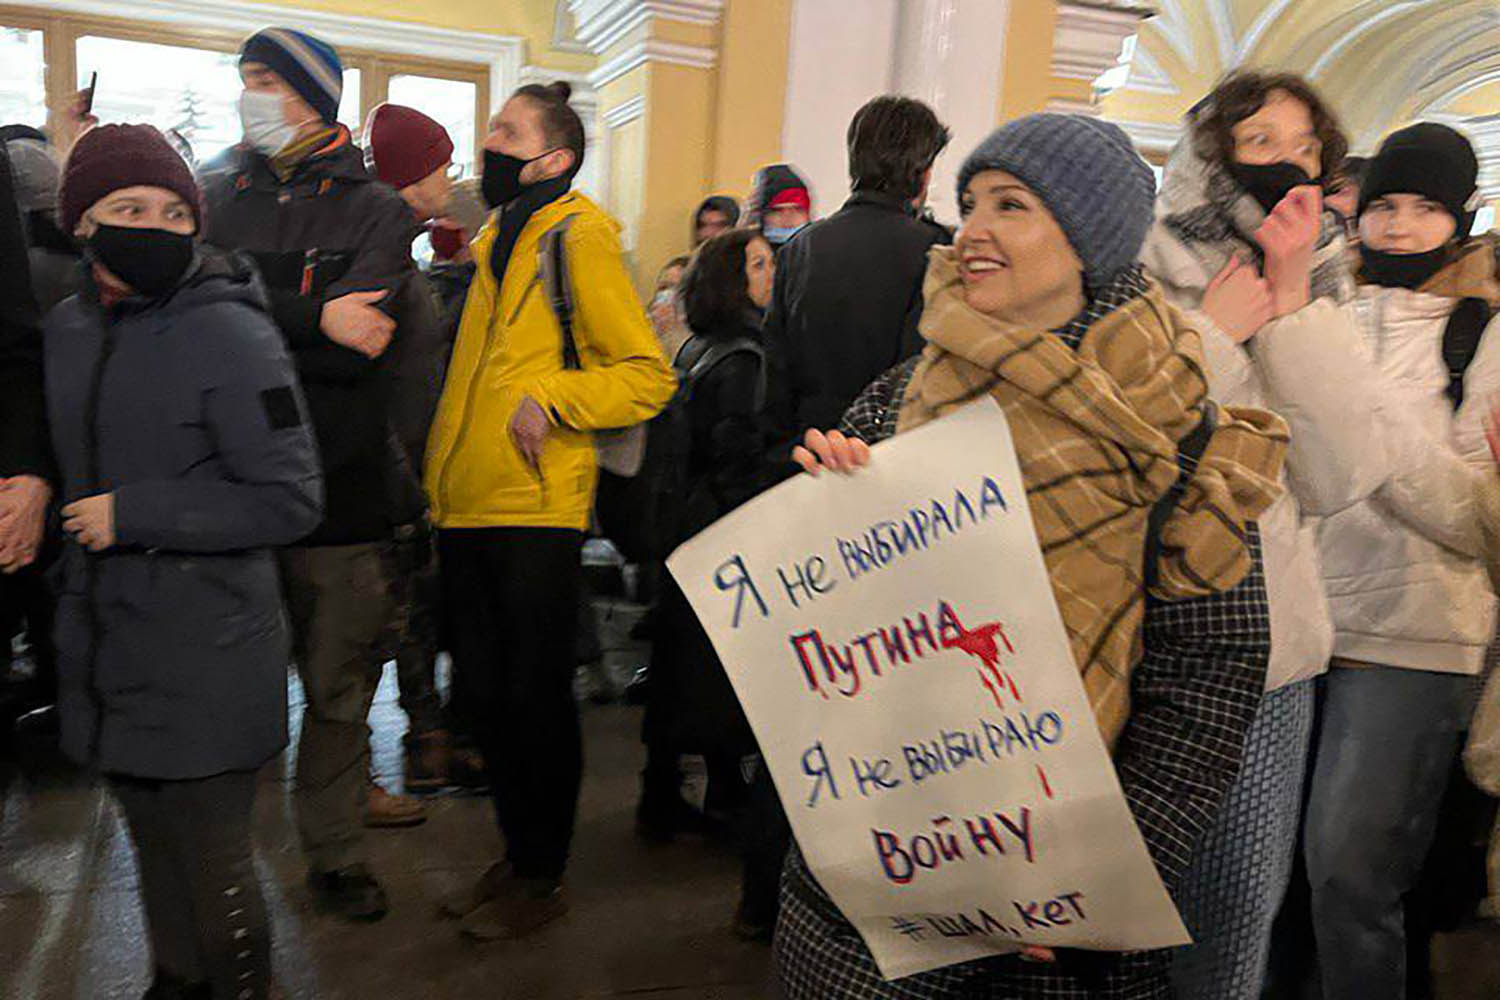 אנה קרוליצ'יבה מפגינה בסנט פטרבורג עם השלט: &quot;לא בחרתי בפוטין. לא בחרתי במלחמה&quot; (צילום: אלבום פרטי)